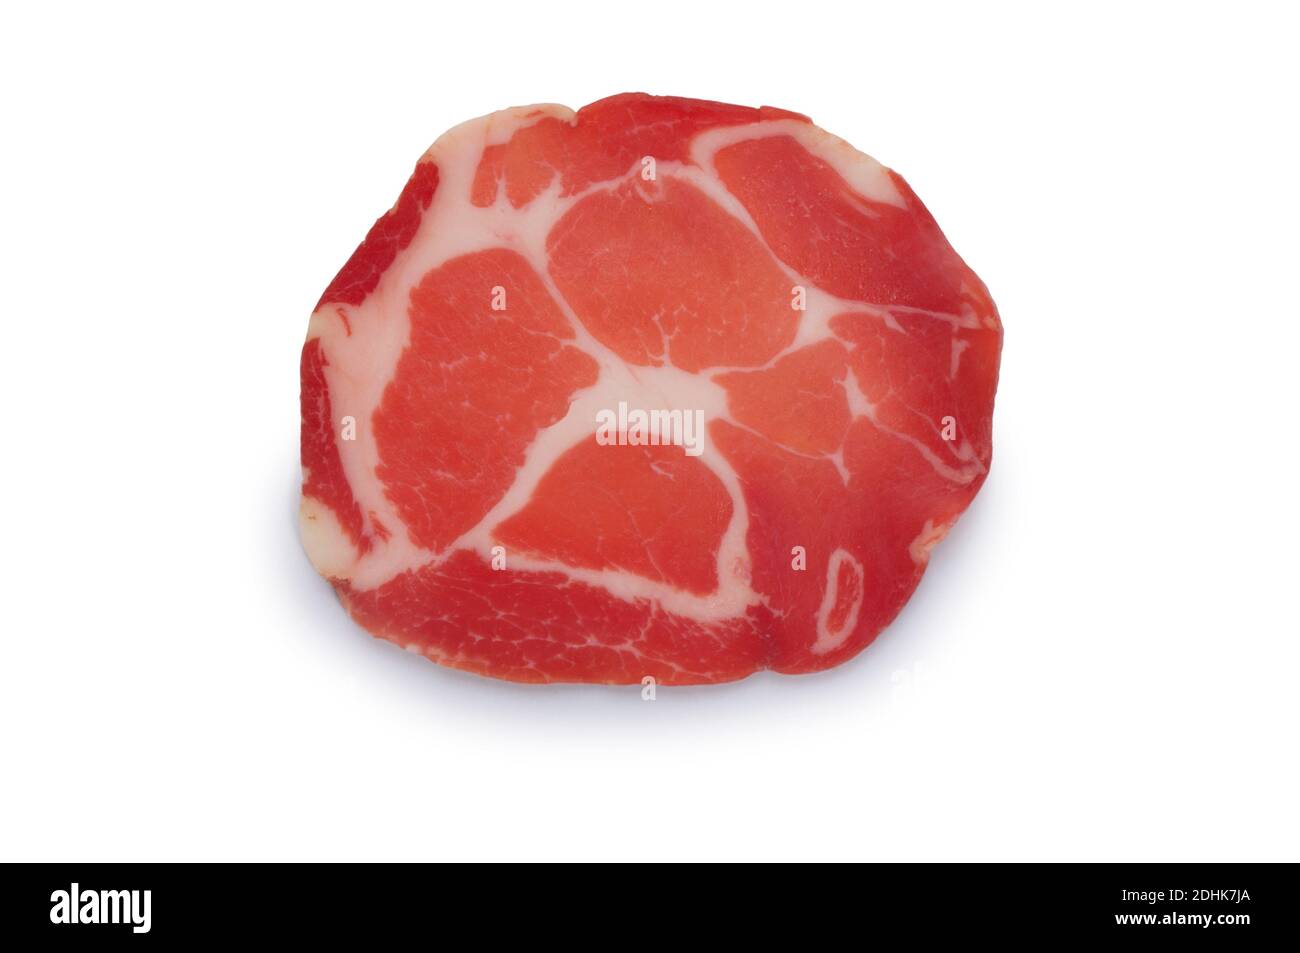 Studioaufnahme von Coppa, einem italienischen trocken gehäuteten Schweinefleisch, vor weißem Hintergrund geschnitten - John Gollop Stockfoto